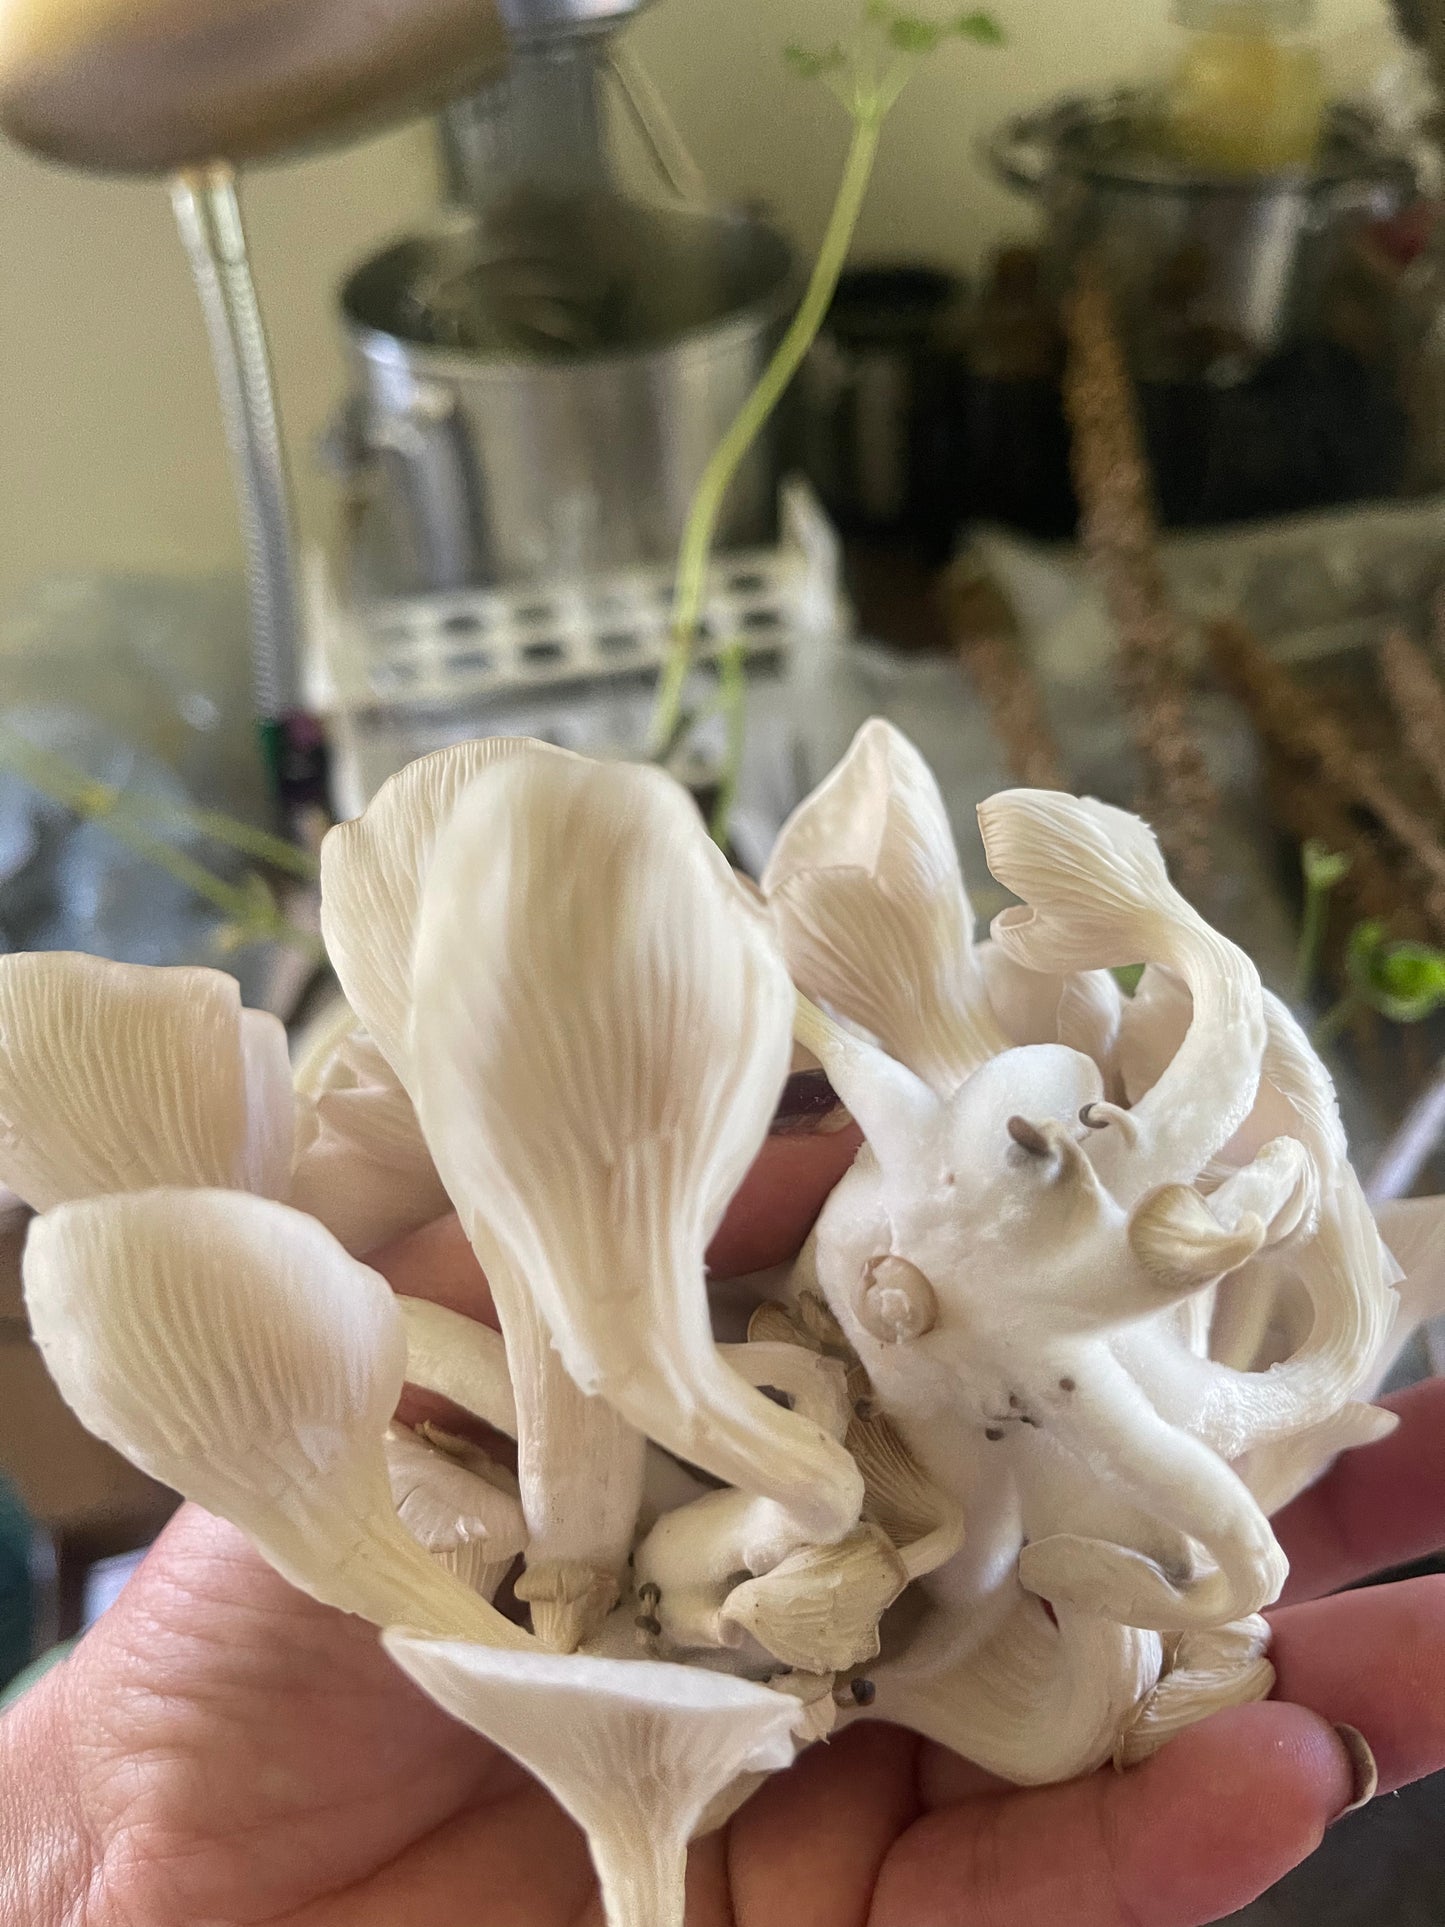 Oyster, bulk dried mushroom